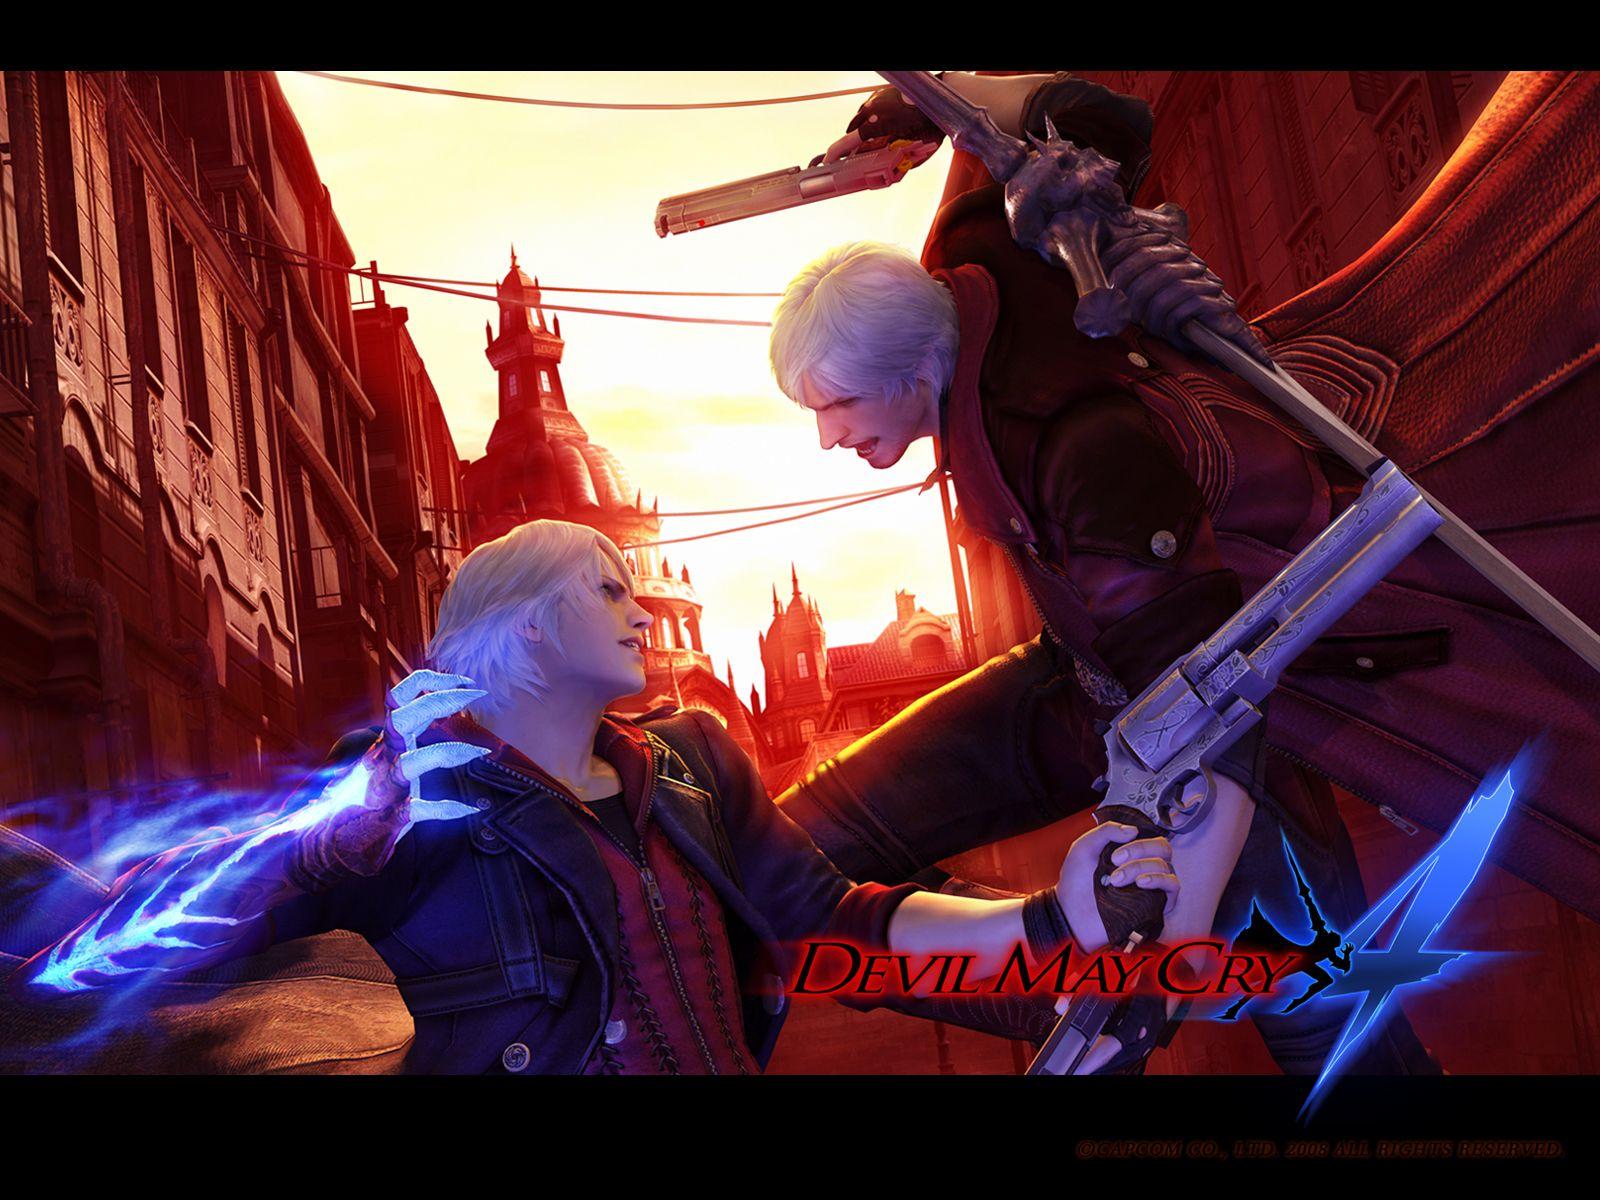 Oficina Steam::Devil May Cry 4: Nero Wallpaper